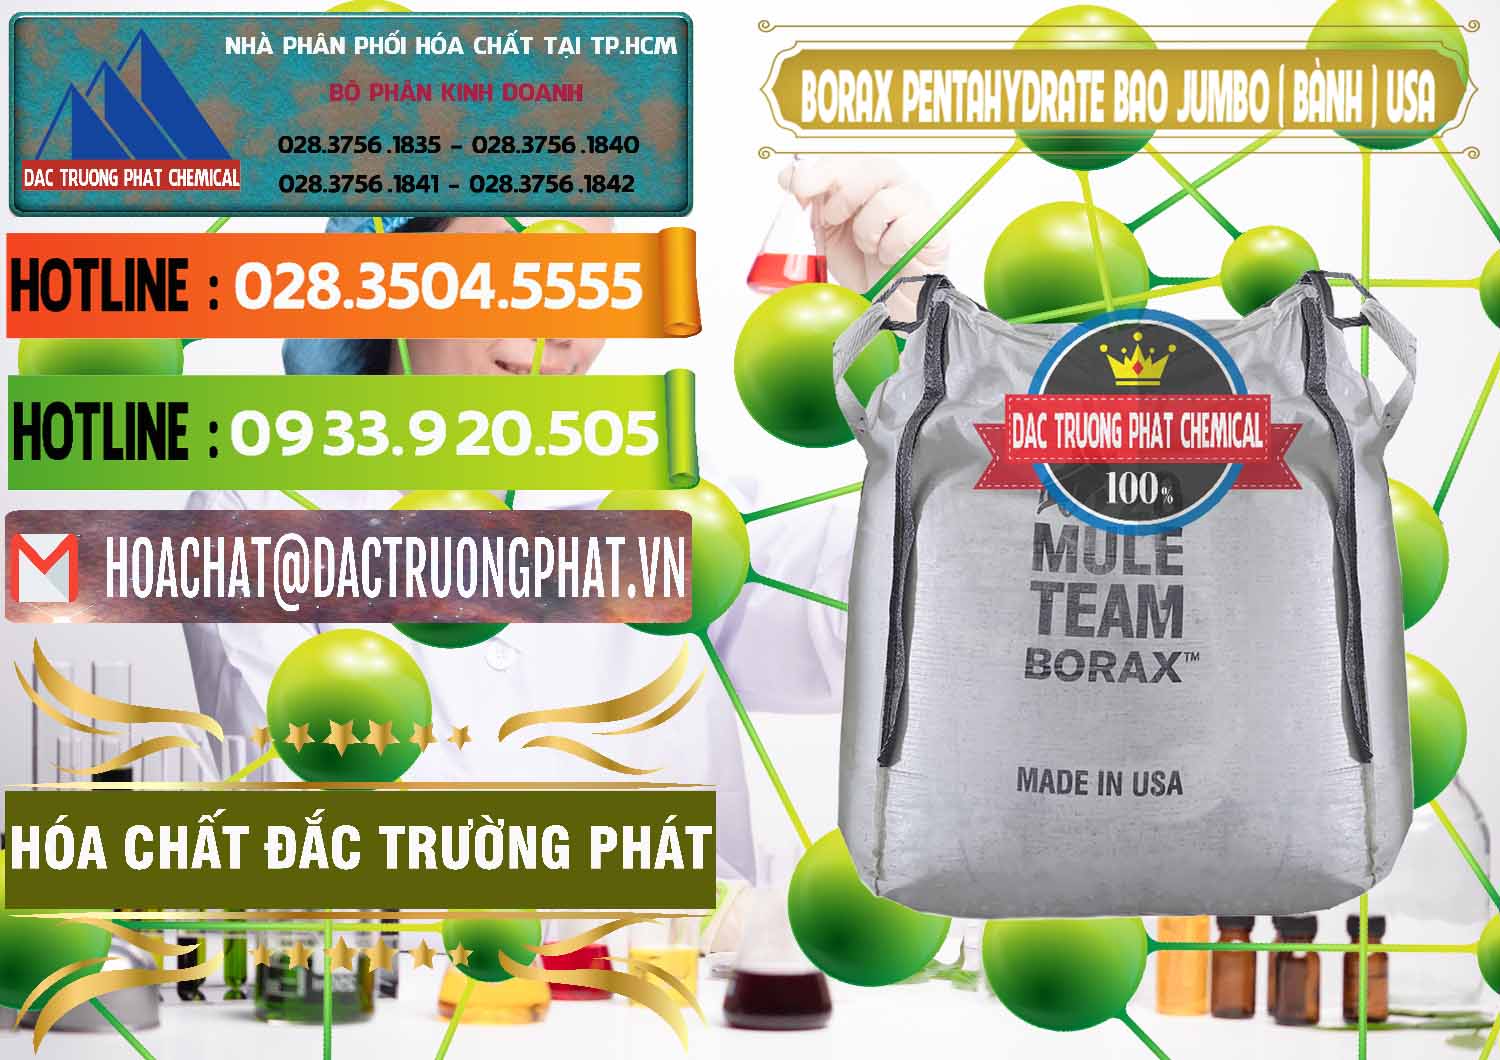 Chuyên cung ứng & bán Borax Pentahydrate Bao Jumbo ( Bành ) Mule 20 Team Mỹ Usa - 0278 - Công ty chuyên bán ( cung cấp ) hóa chất tại TP.HCM - cungcaphoachat.com.vn